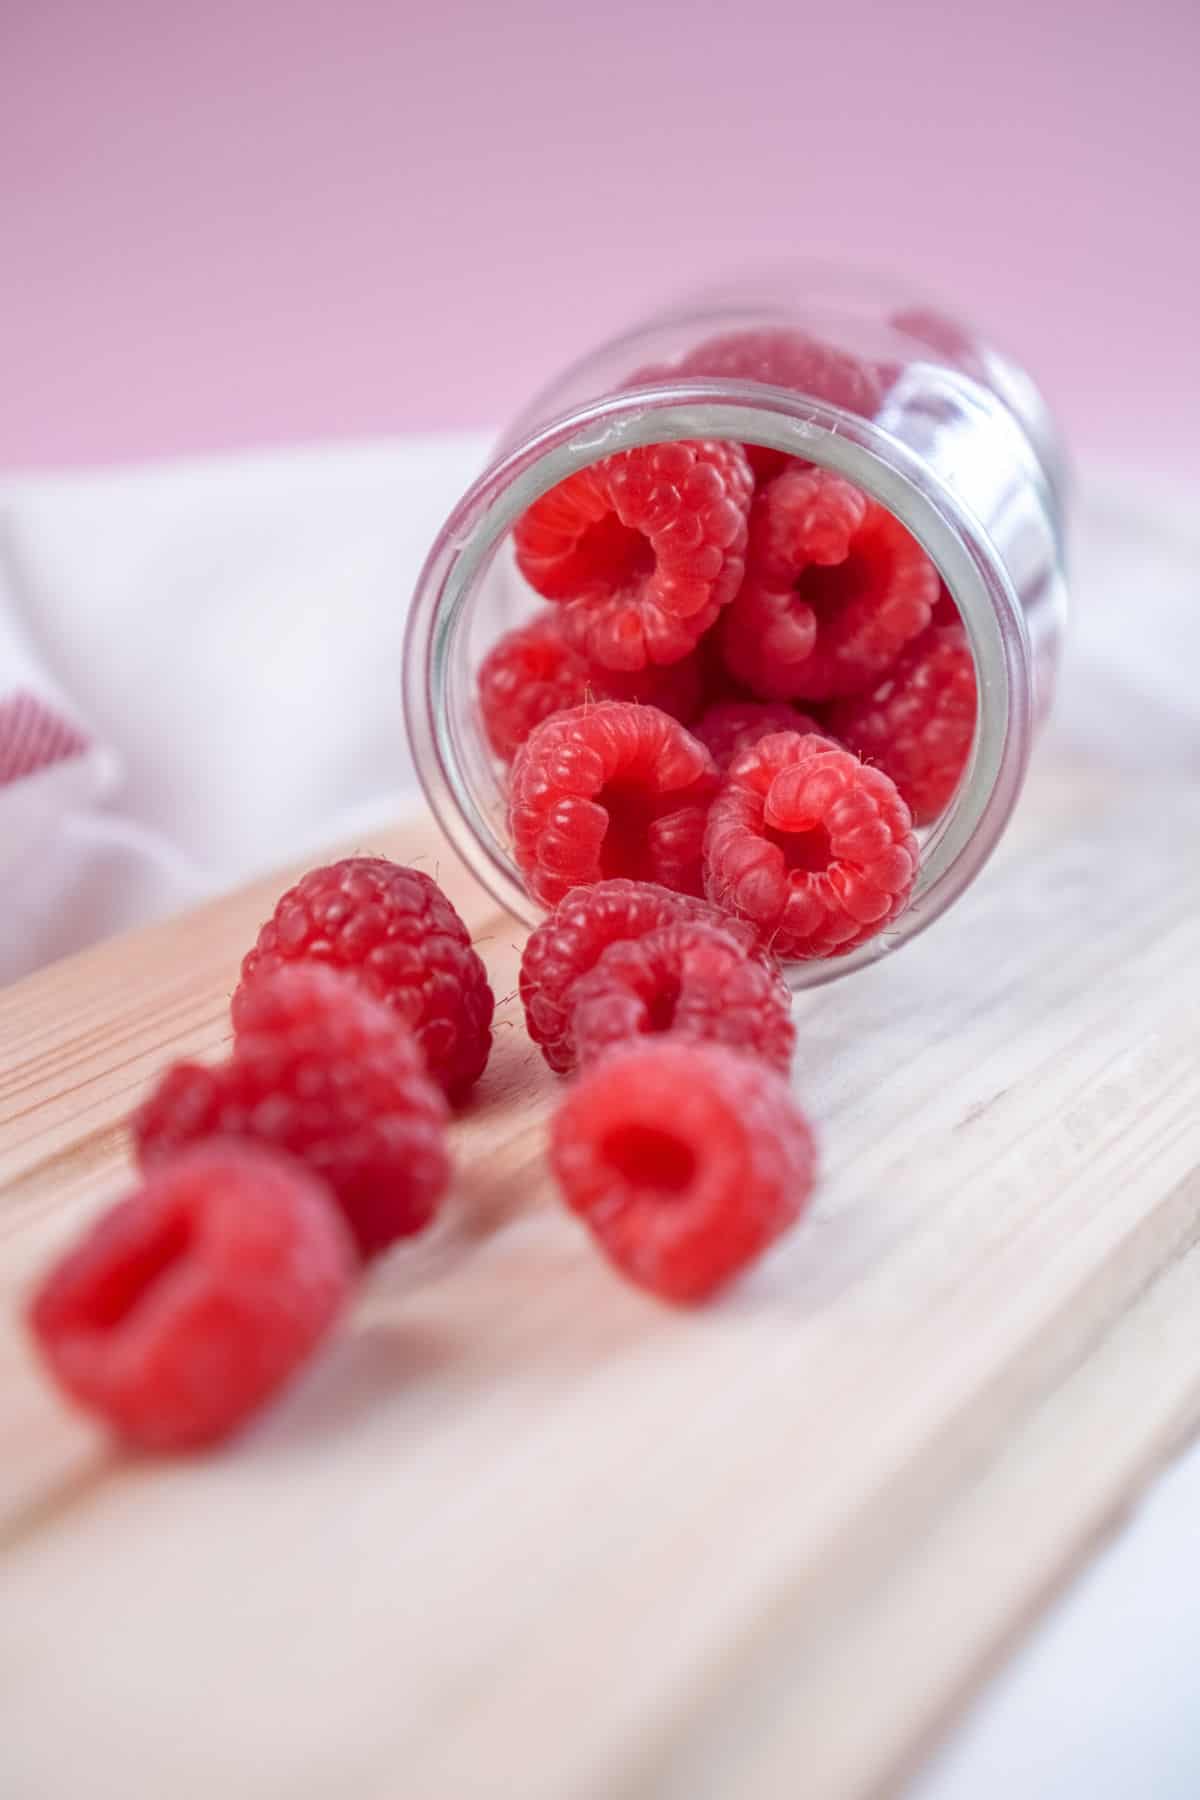 A jar of fresh raspberries.